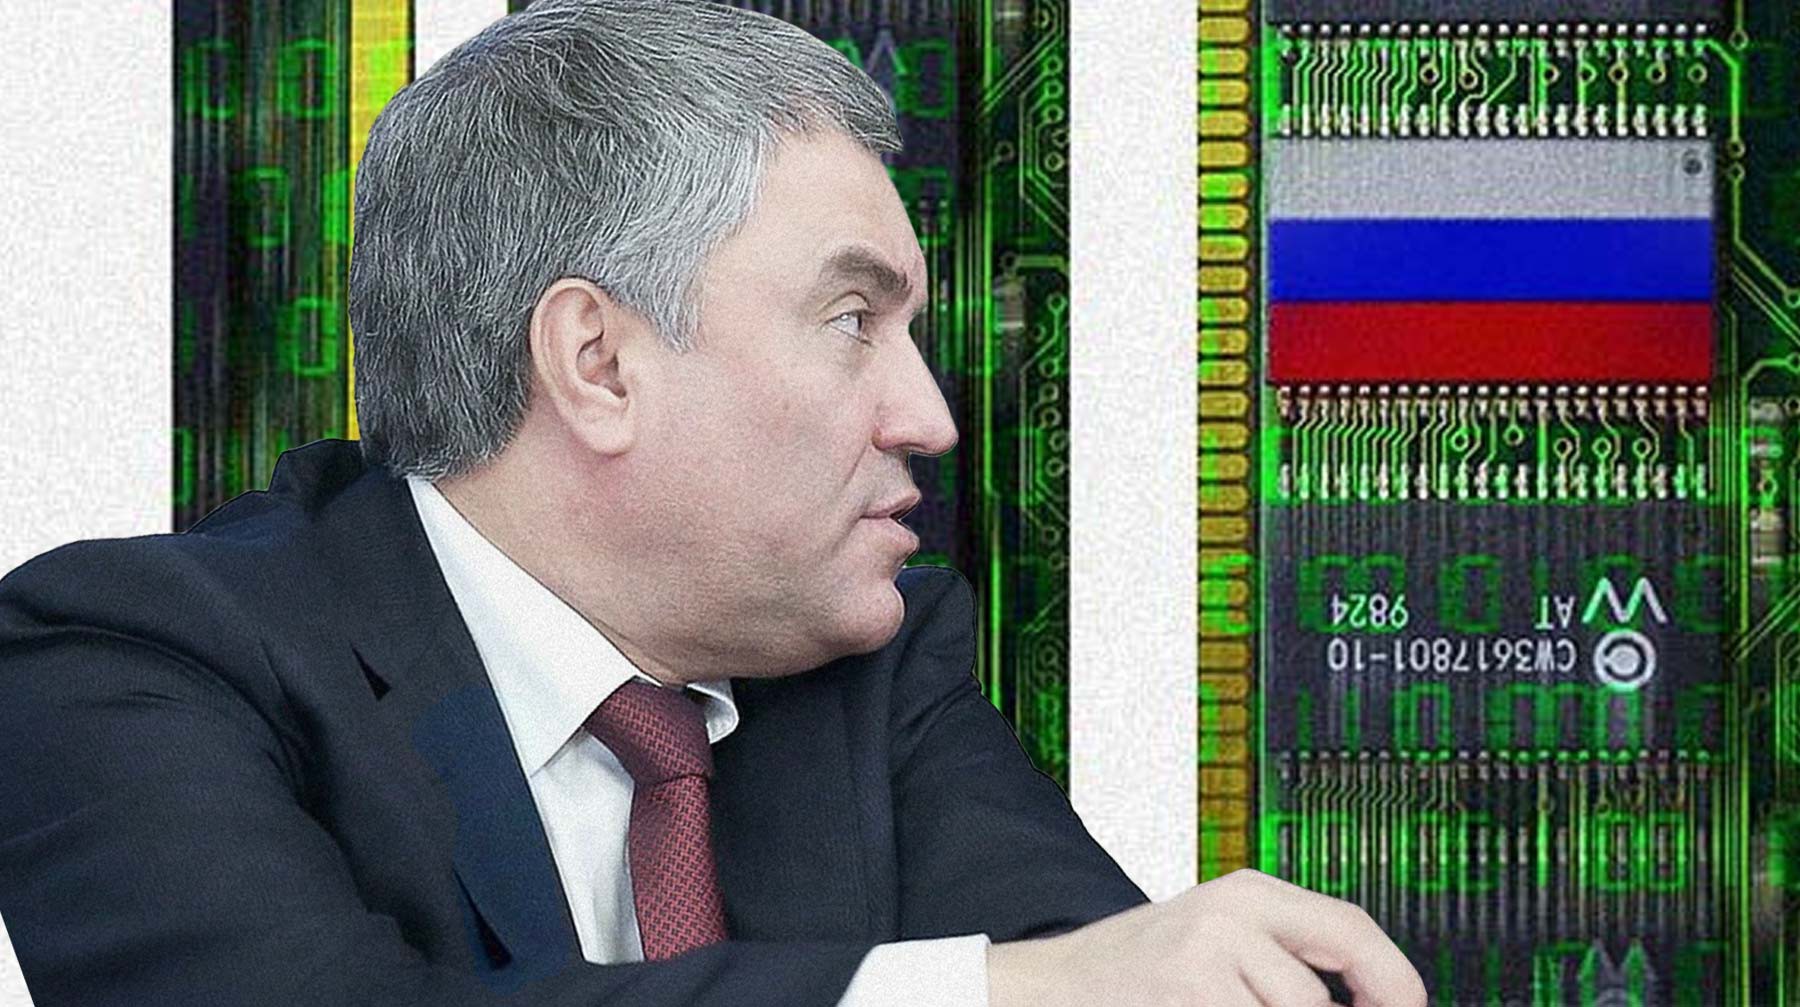 Dailystorm - Пресс-секретарь Володина опровергла сообщения о нежелании спикера говорить о суверенном рунете